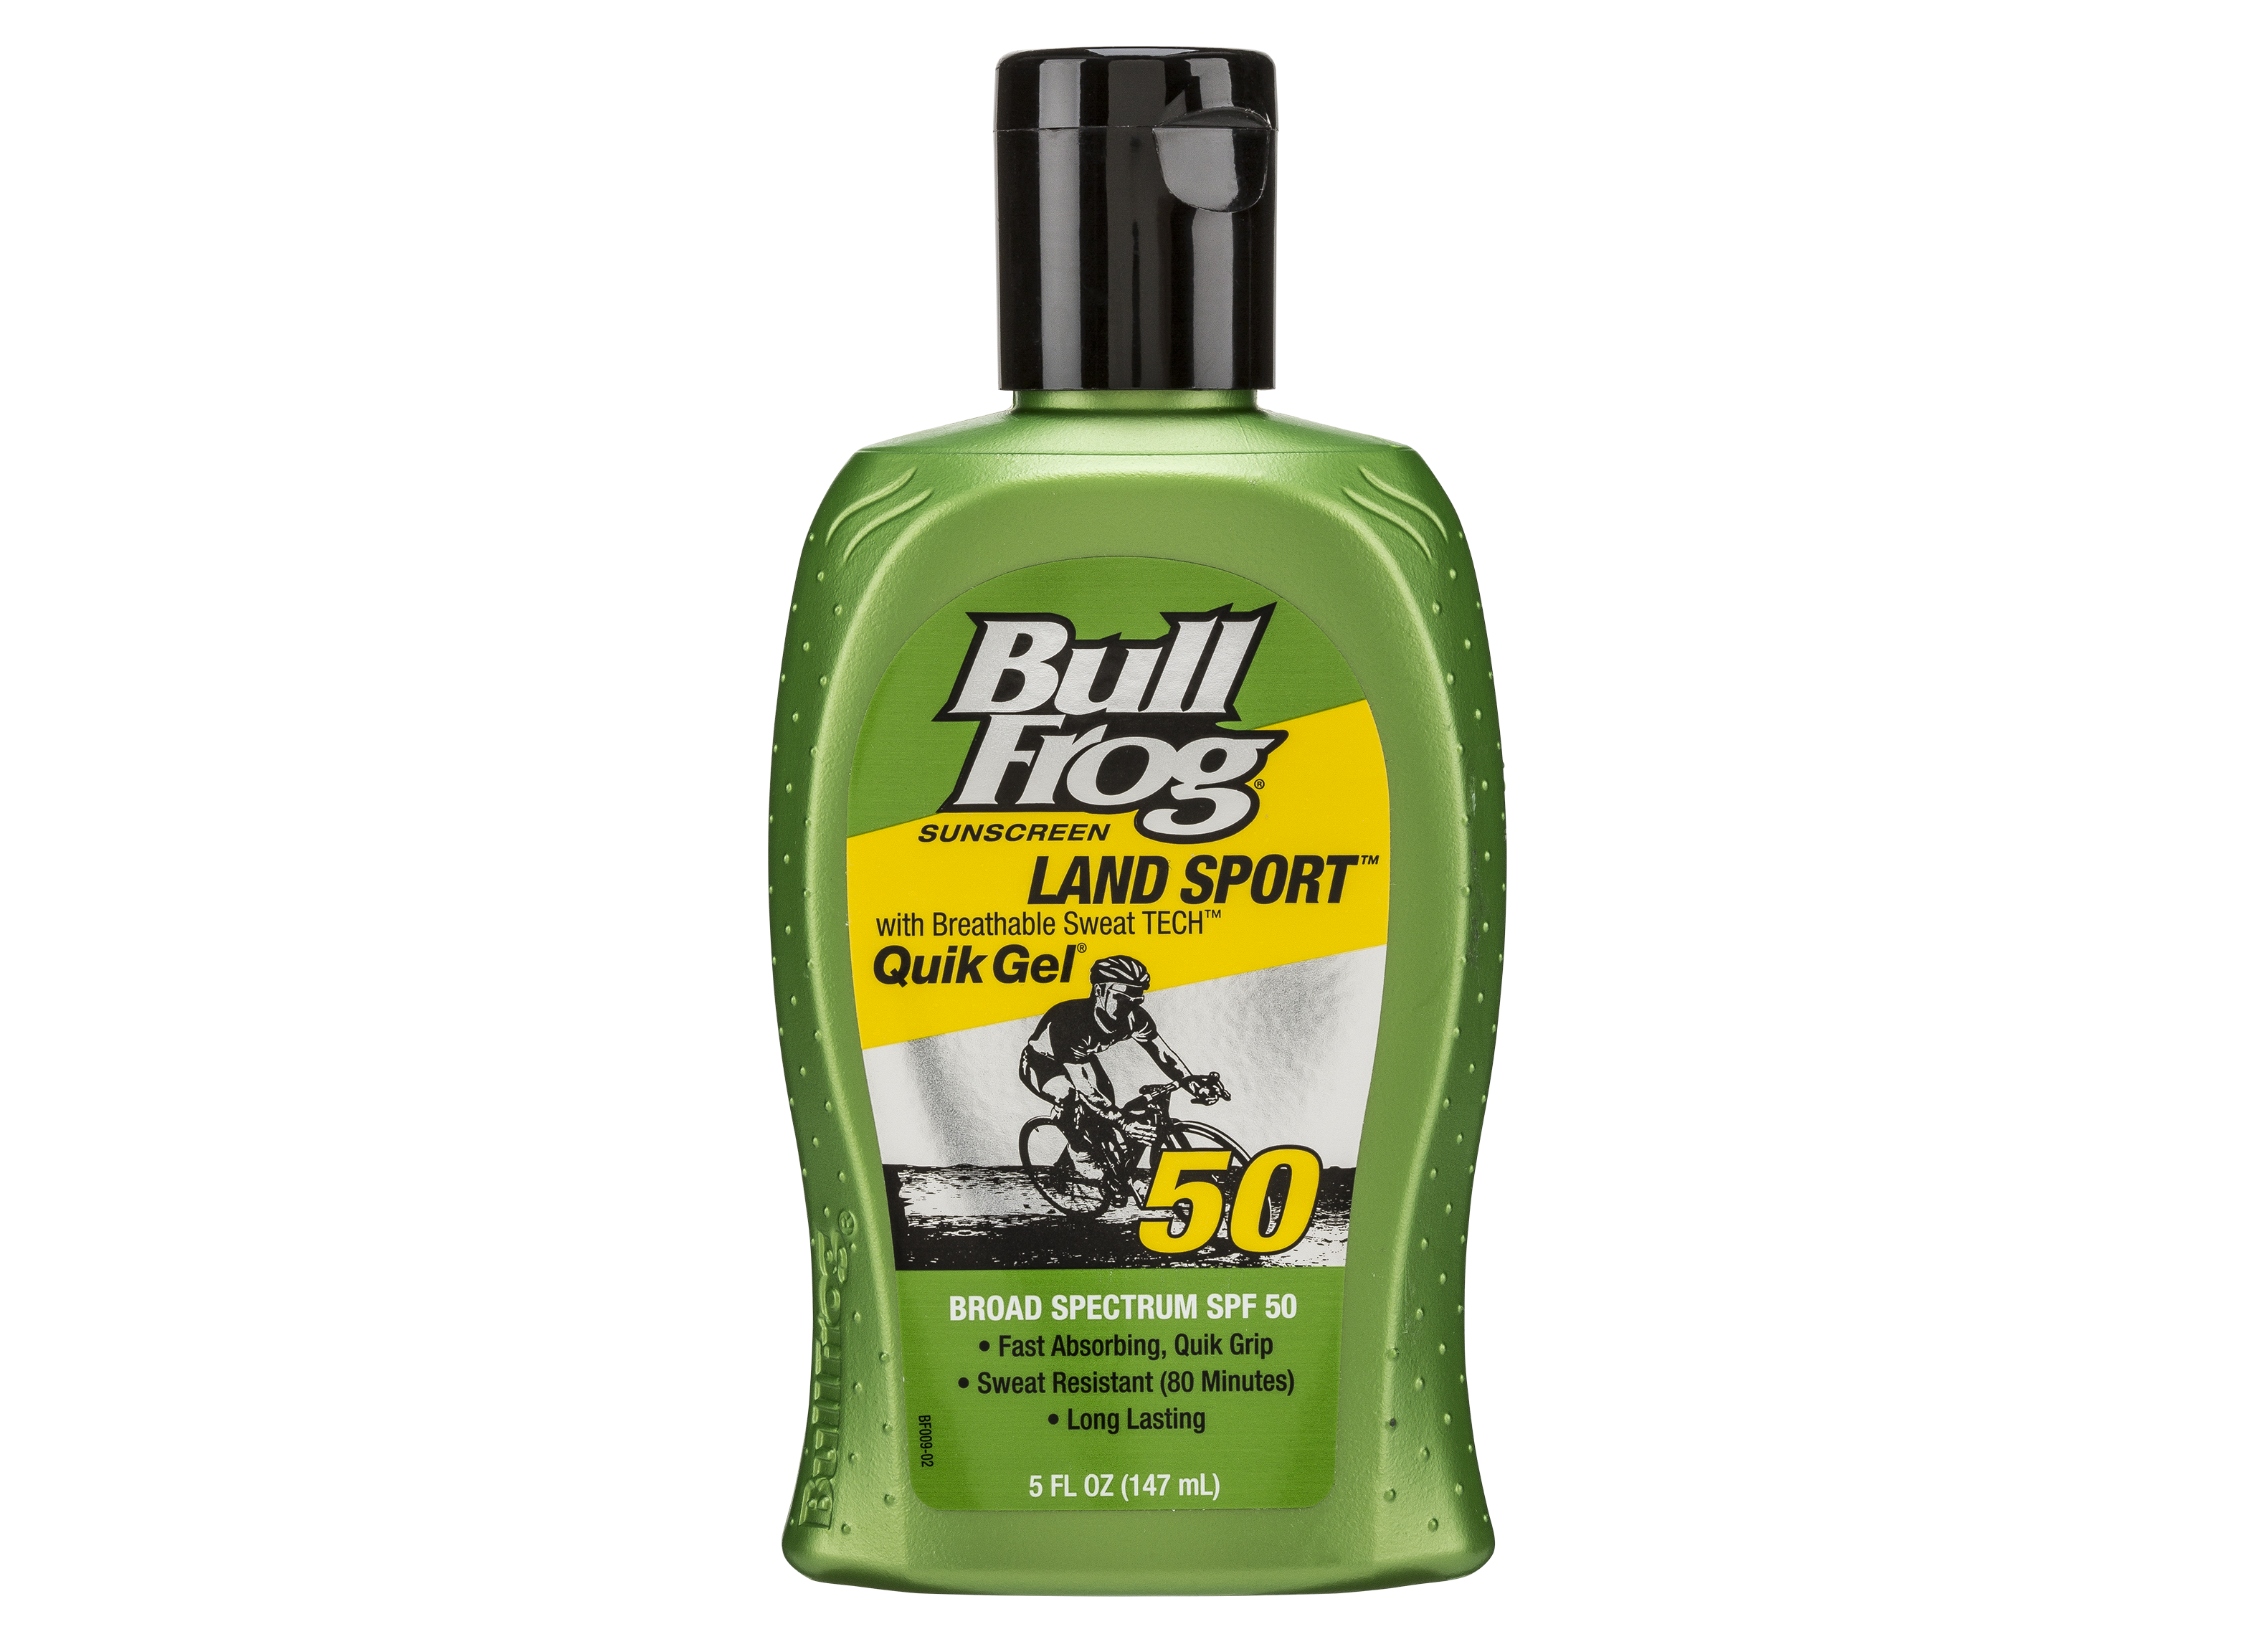 BullFrog Land Sport Quik Gel SPF 50 Sunscreen Review - Consumer 